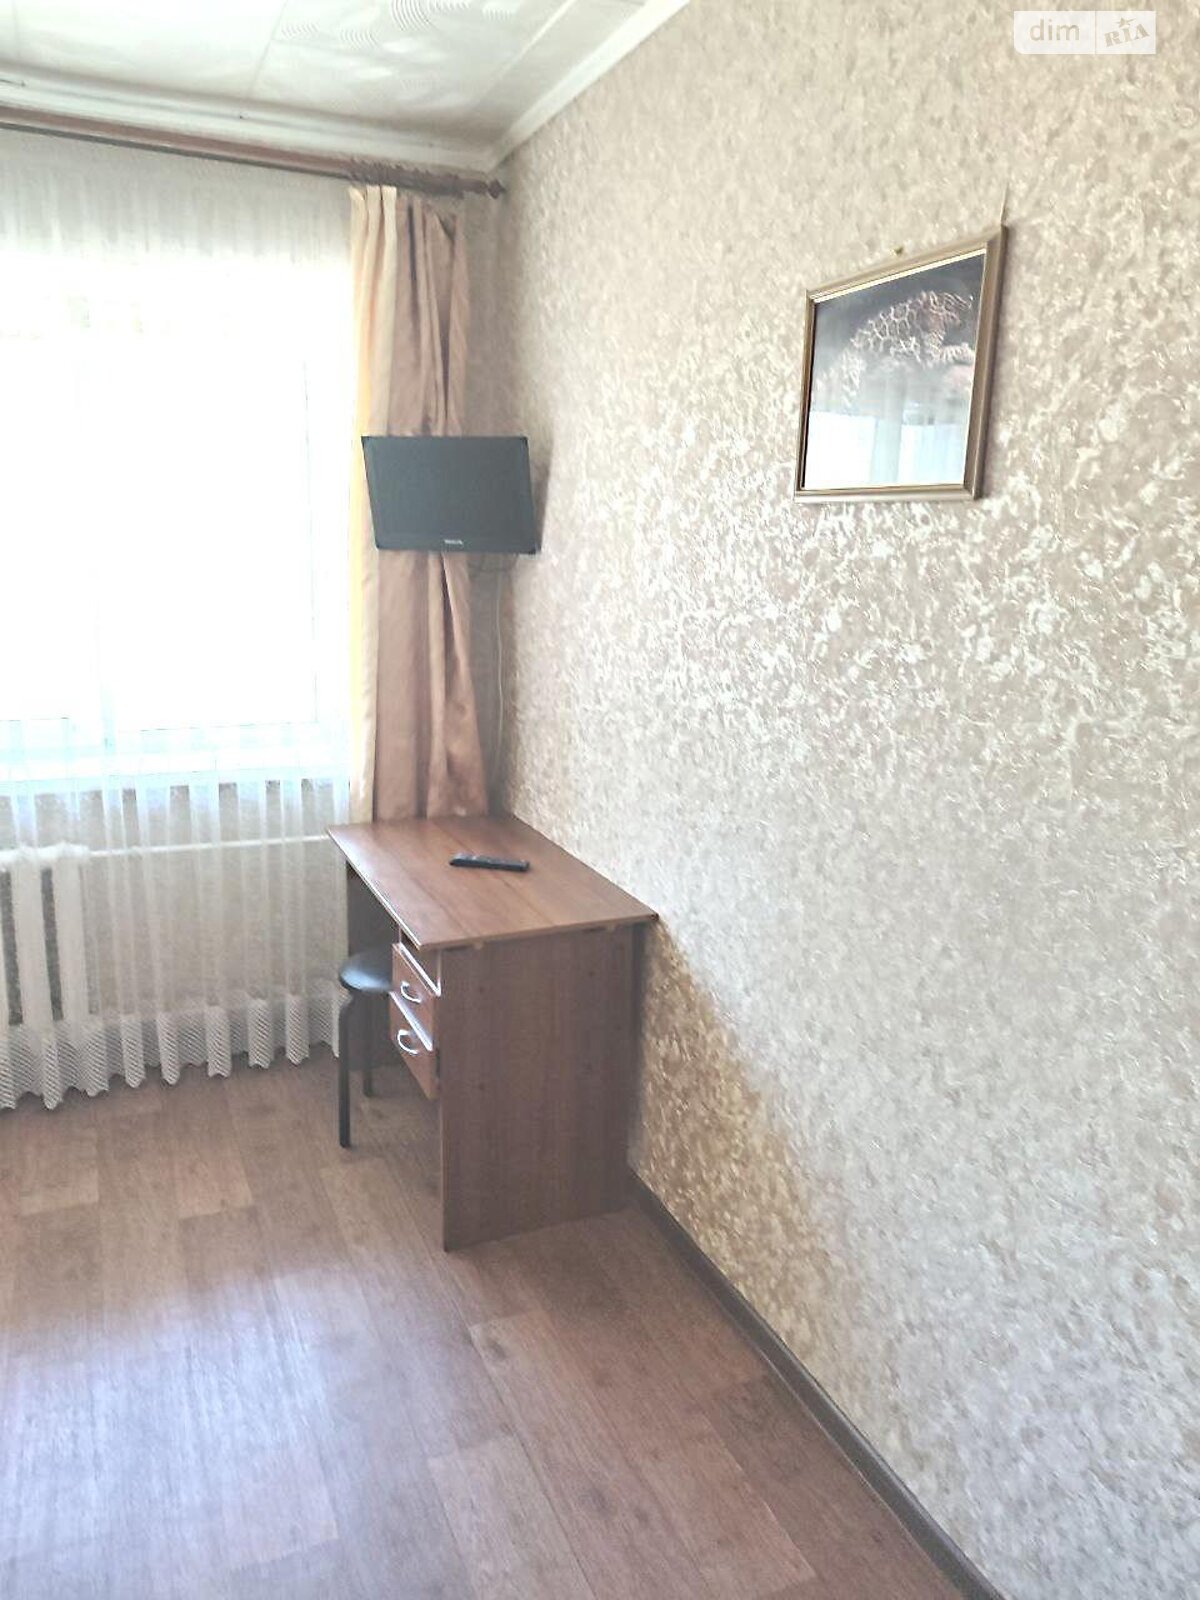 Кімната в Харкові на вул. Шекспіра 13 в районі Павлове Поле на продаж фото 1